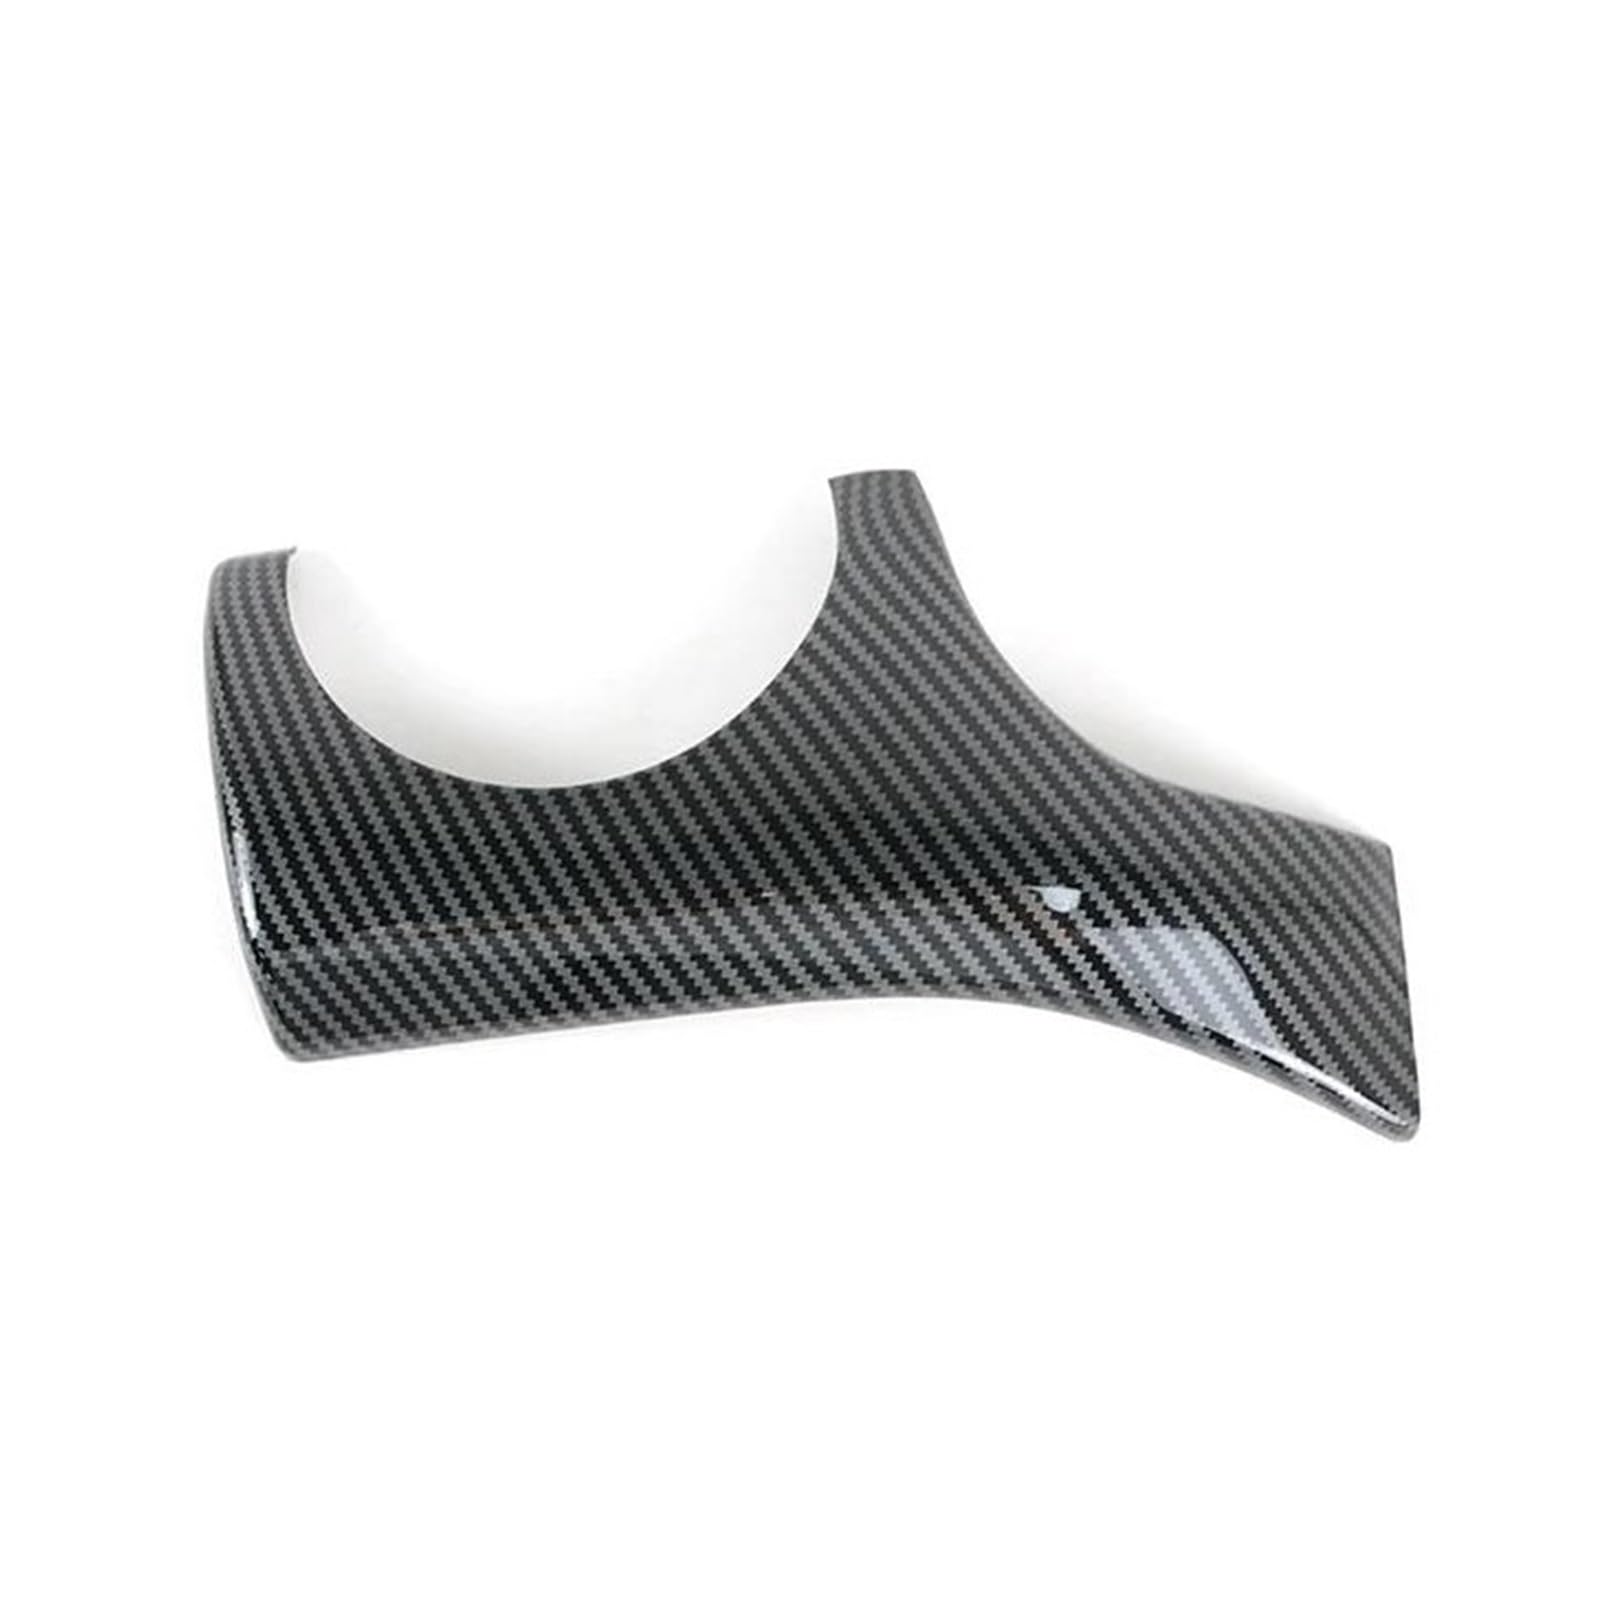 Auto Innenstyling Auto Armaturenbrett Linke Seite Air Outlet Rahmen Abdeckung Trim Zubehör Für CLA C117 GLA X156 2013-2018 (Farbe : Carbon Black) von InkRaz